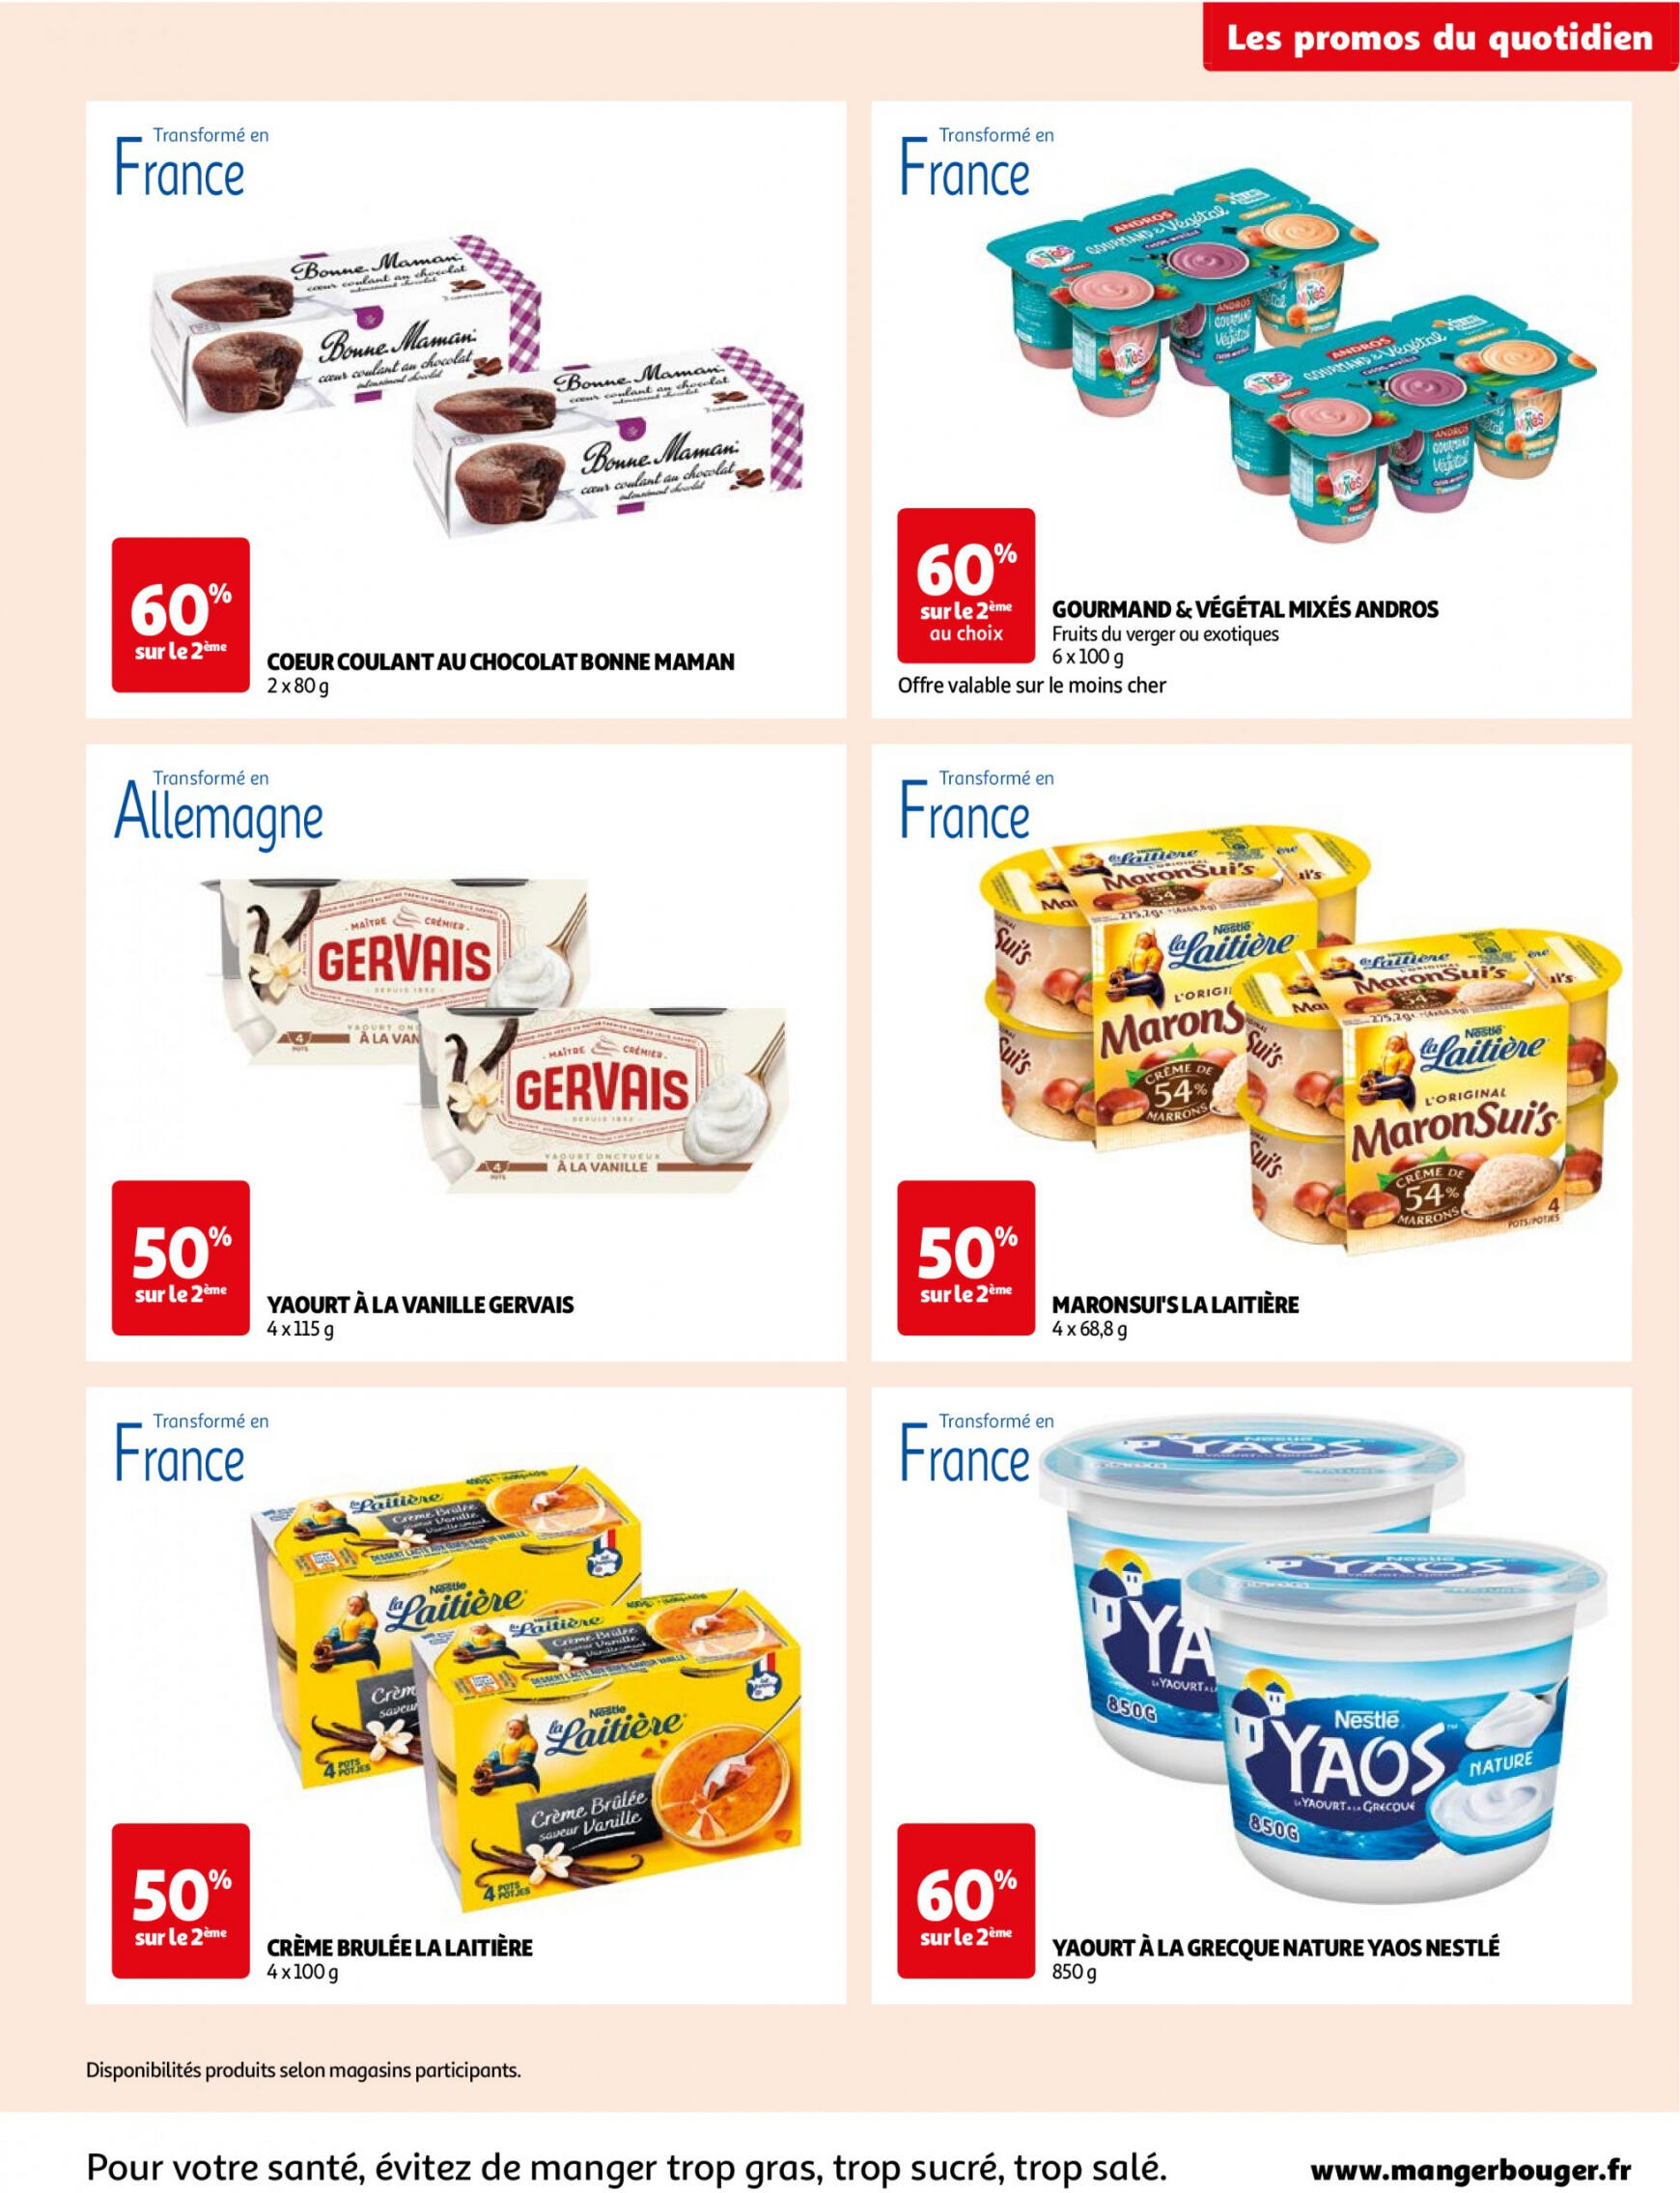 auchan - Auchan - Des économies au quotidien folder huidig 14.05. - 03.06. - page: 3